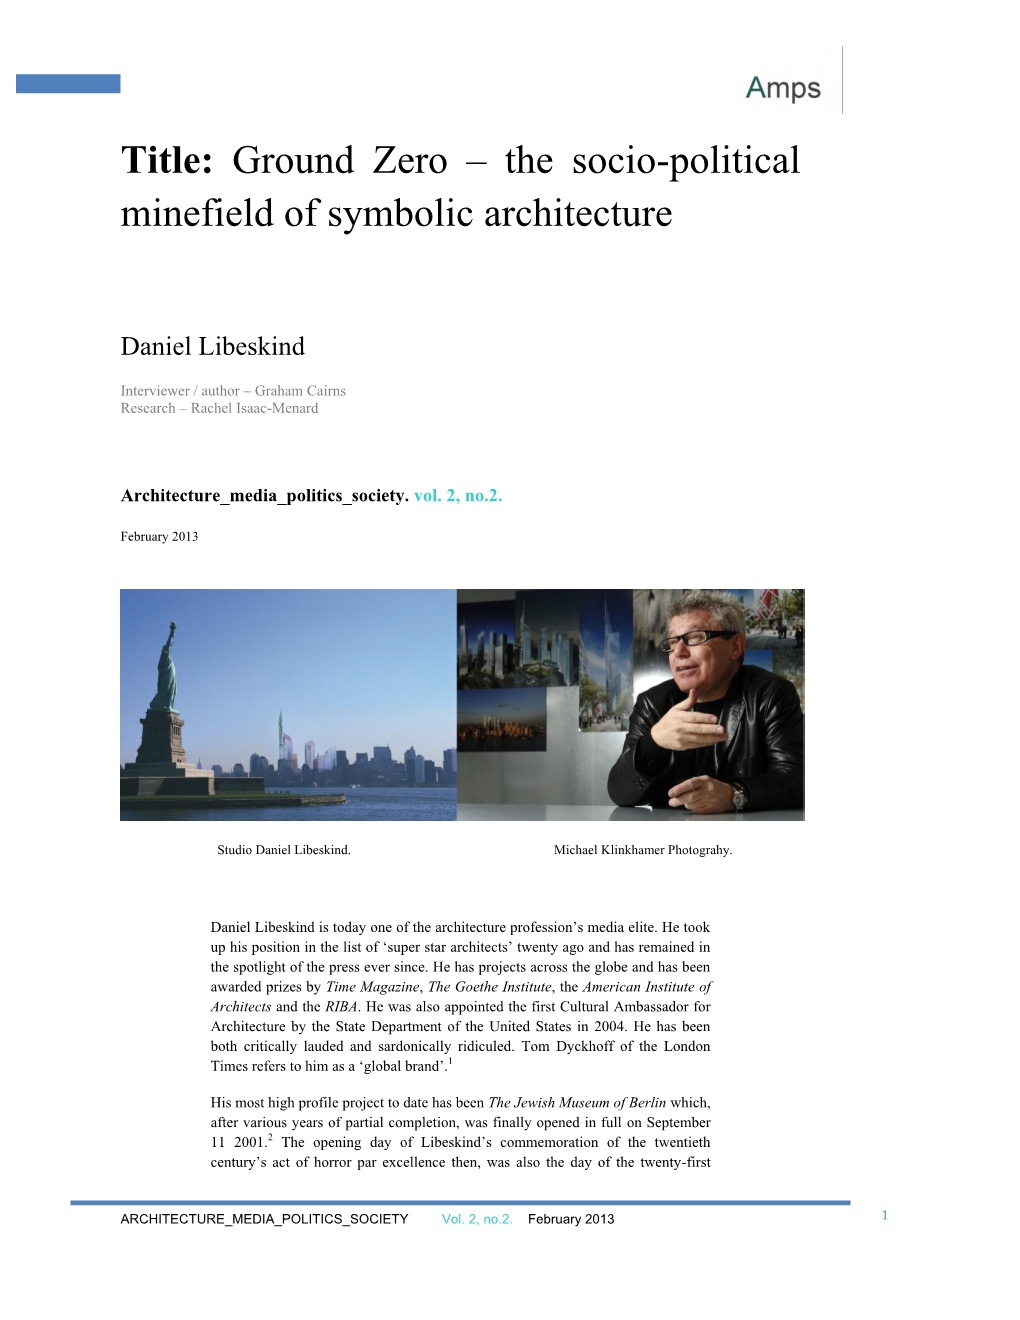 Ground Zero – the Socio-Political Minefield of Symbolic Architecture